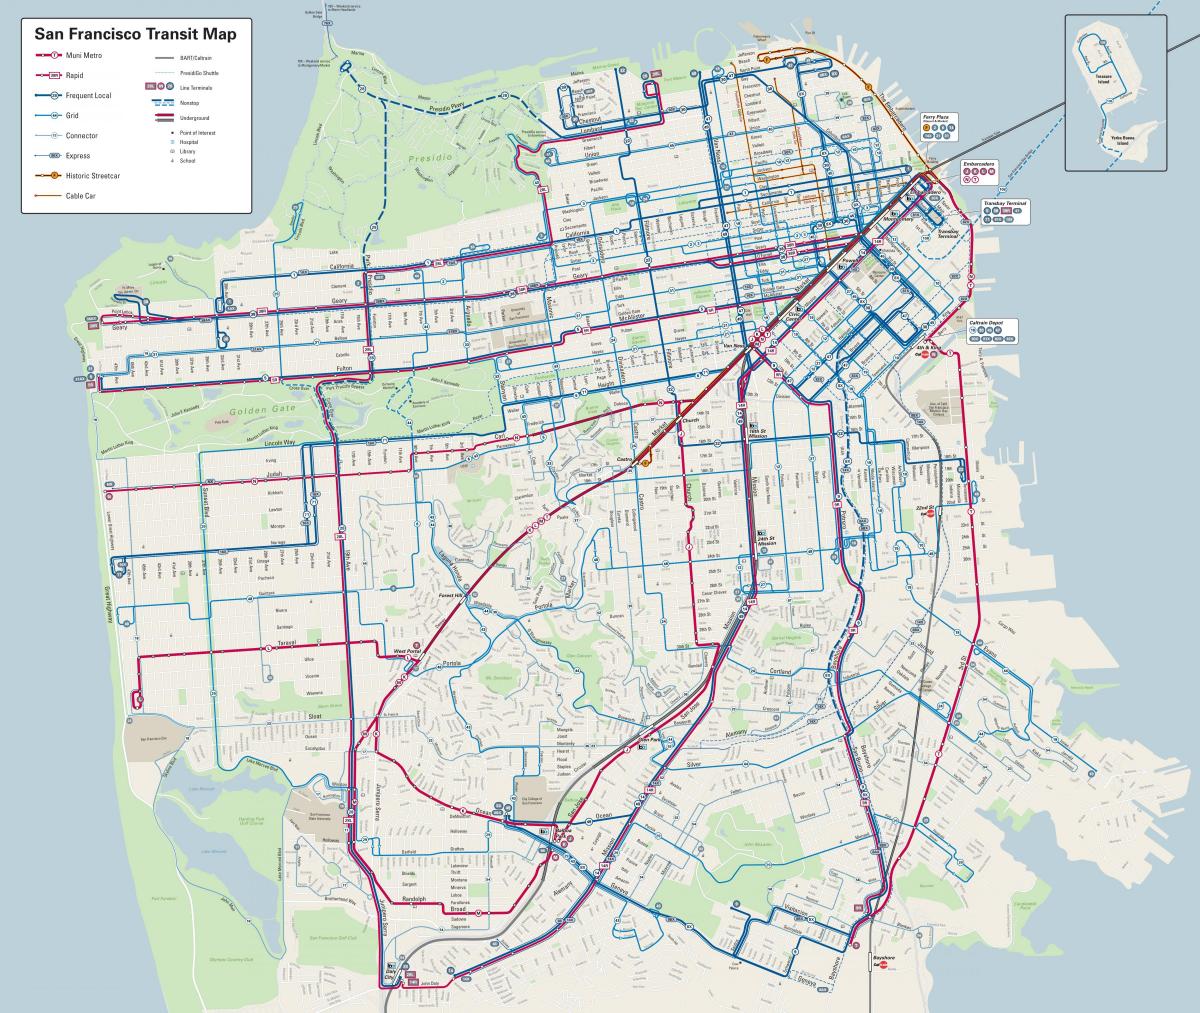 Ավտոբուսի գծեր Սան Ֆրանցիսկոյում քարտեզի վրա